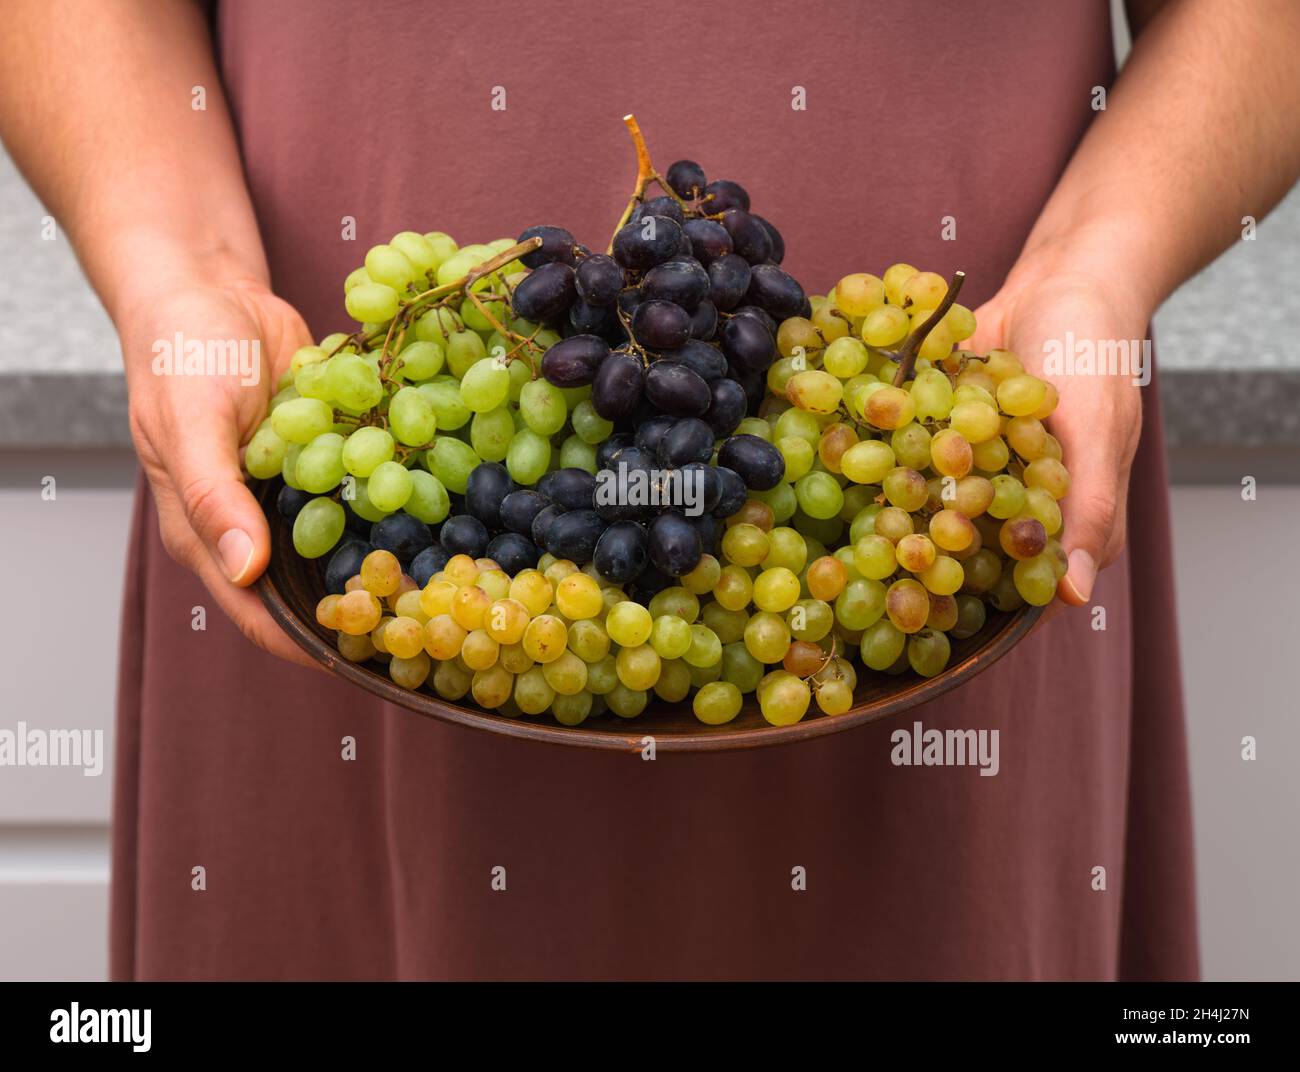 Des grappes de raisin Sultana blanc, bleu et rose sur une assiette dans les mains de la femme. Banque D'Images